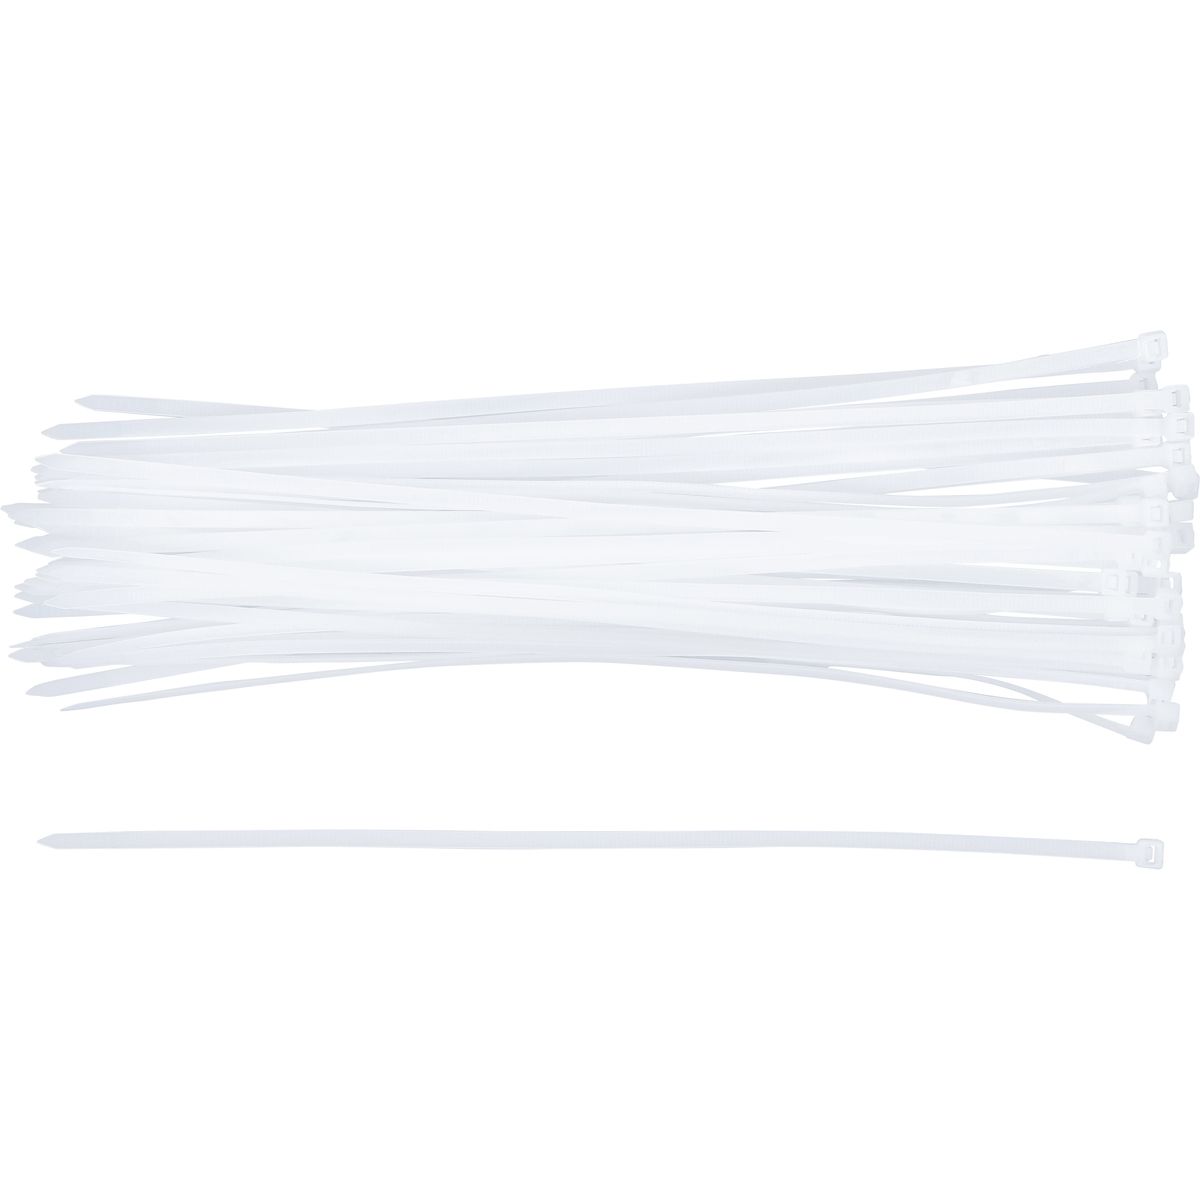 Assortiment de colliers plastique | blancs | 4,8 x 300 mm | 50 pièces